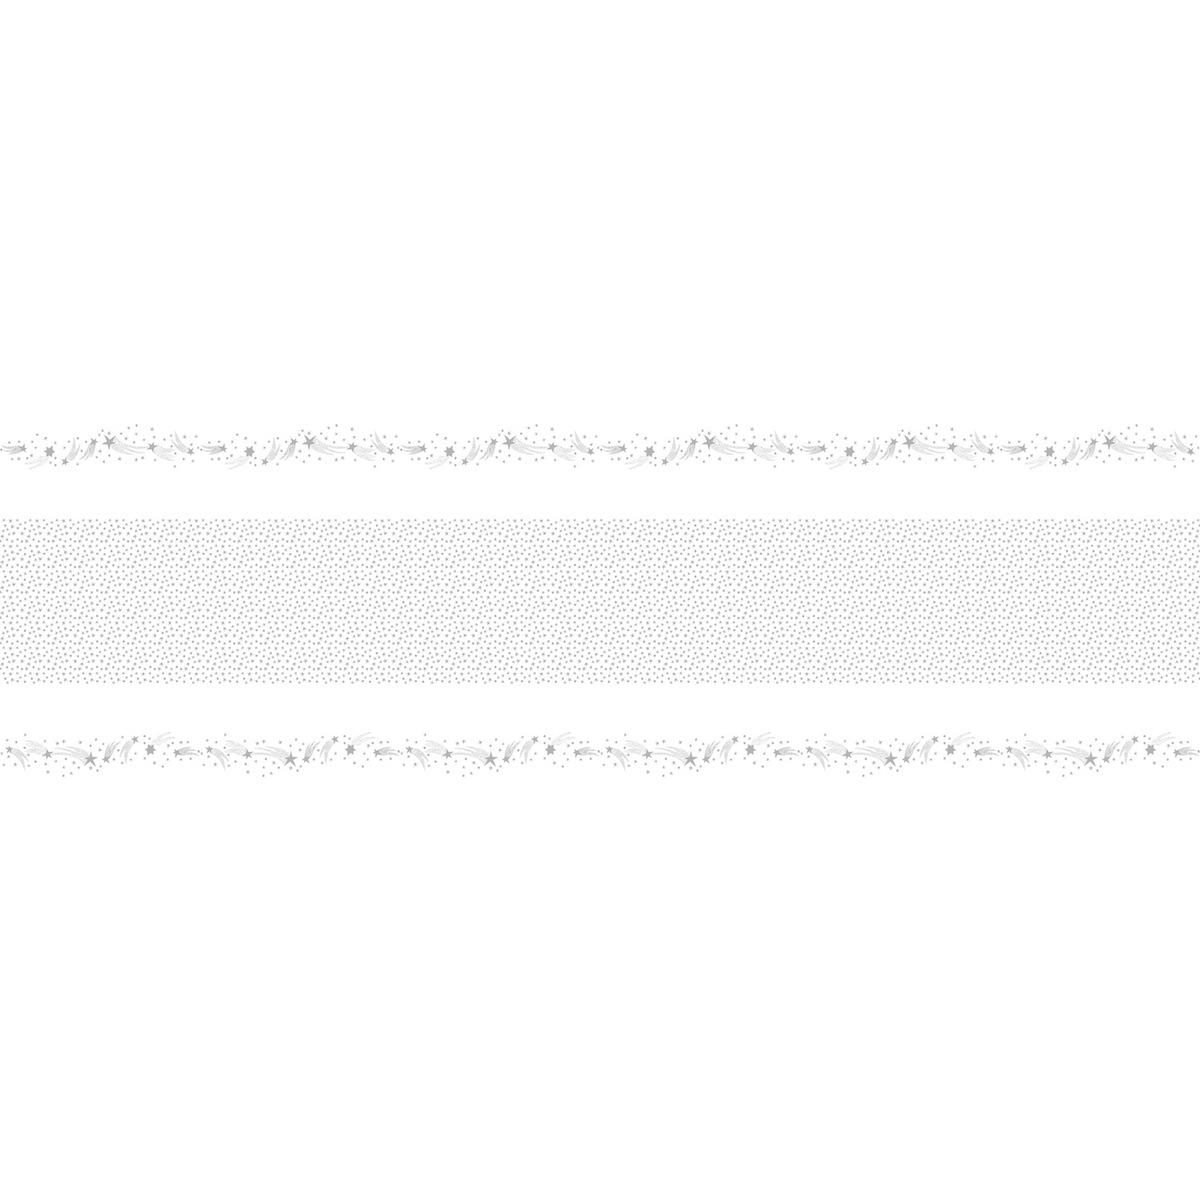 Nappe en rouleau - 1,18 x 6 m - Blanc, Gris argent